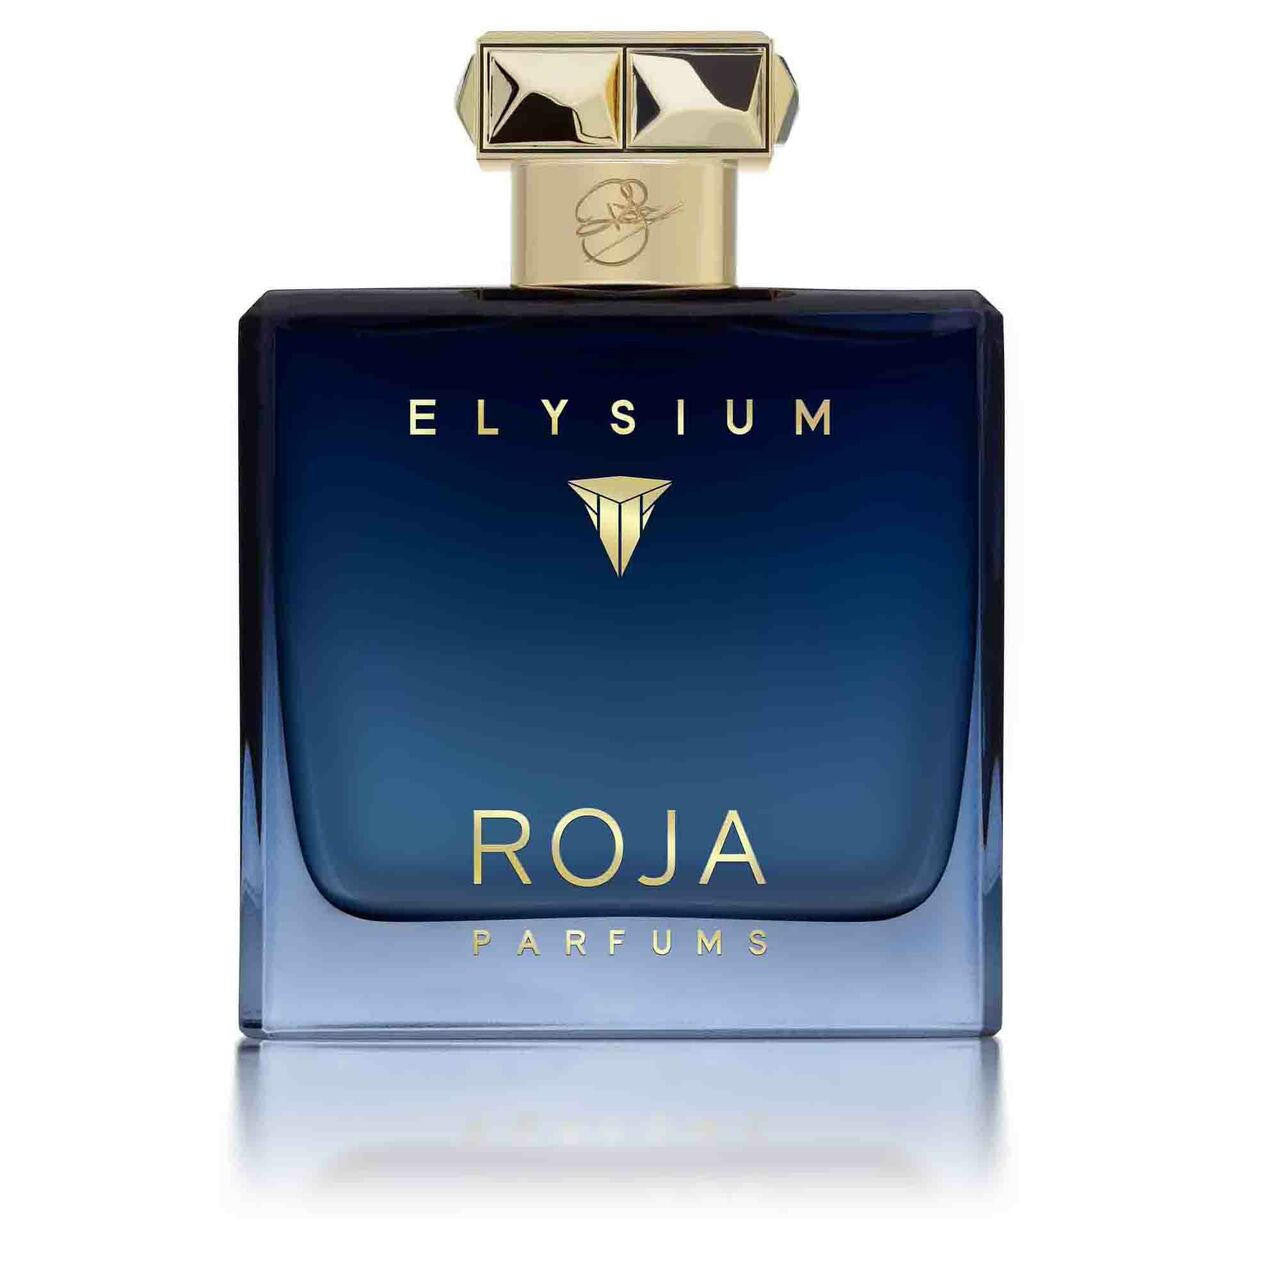 Roja Pour Homme Elysium Parfum Cologne